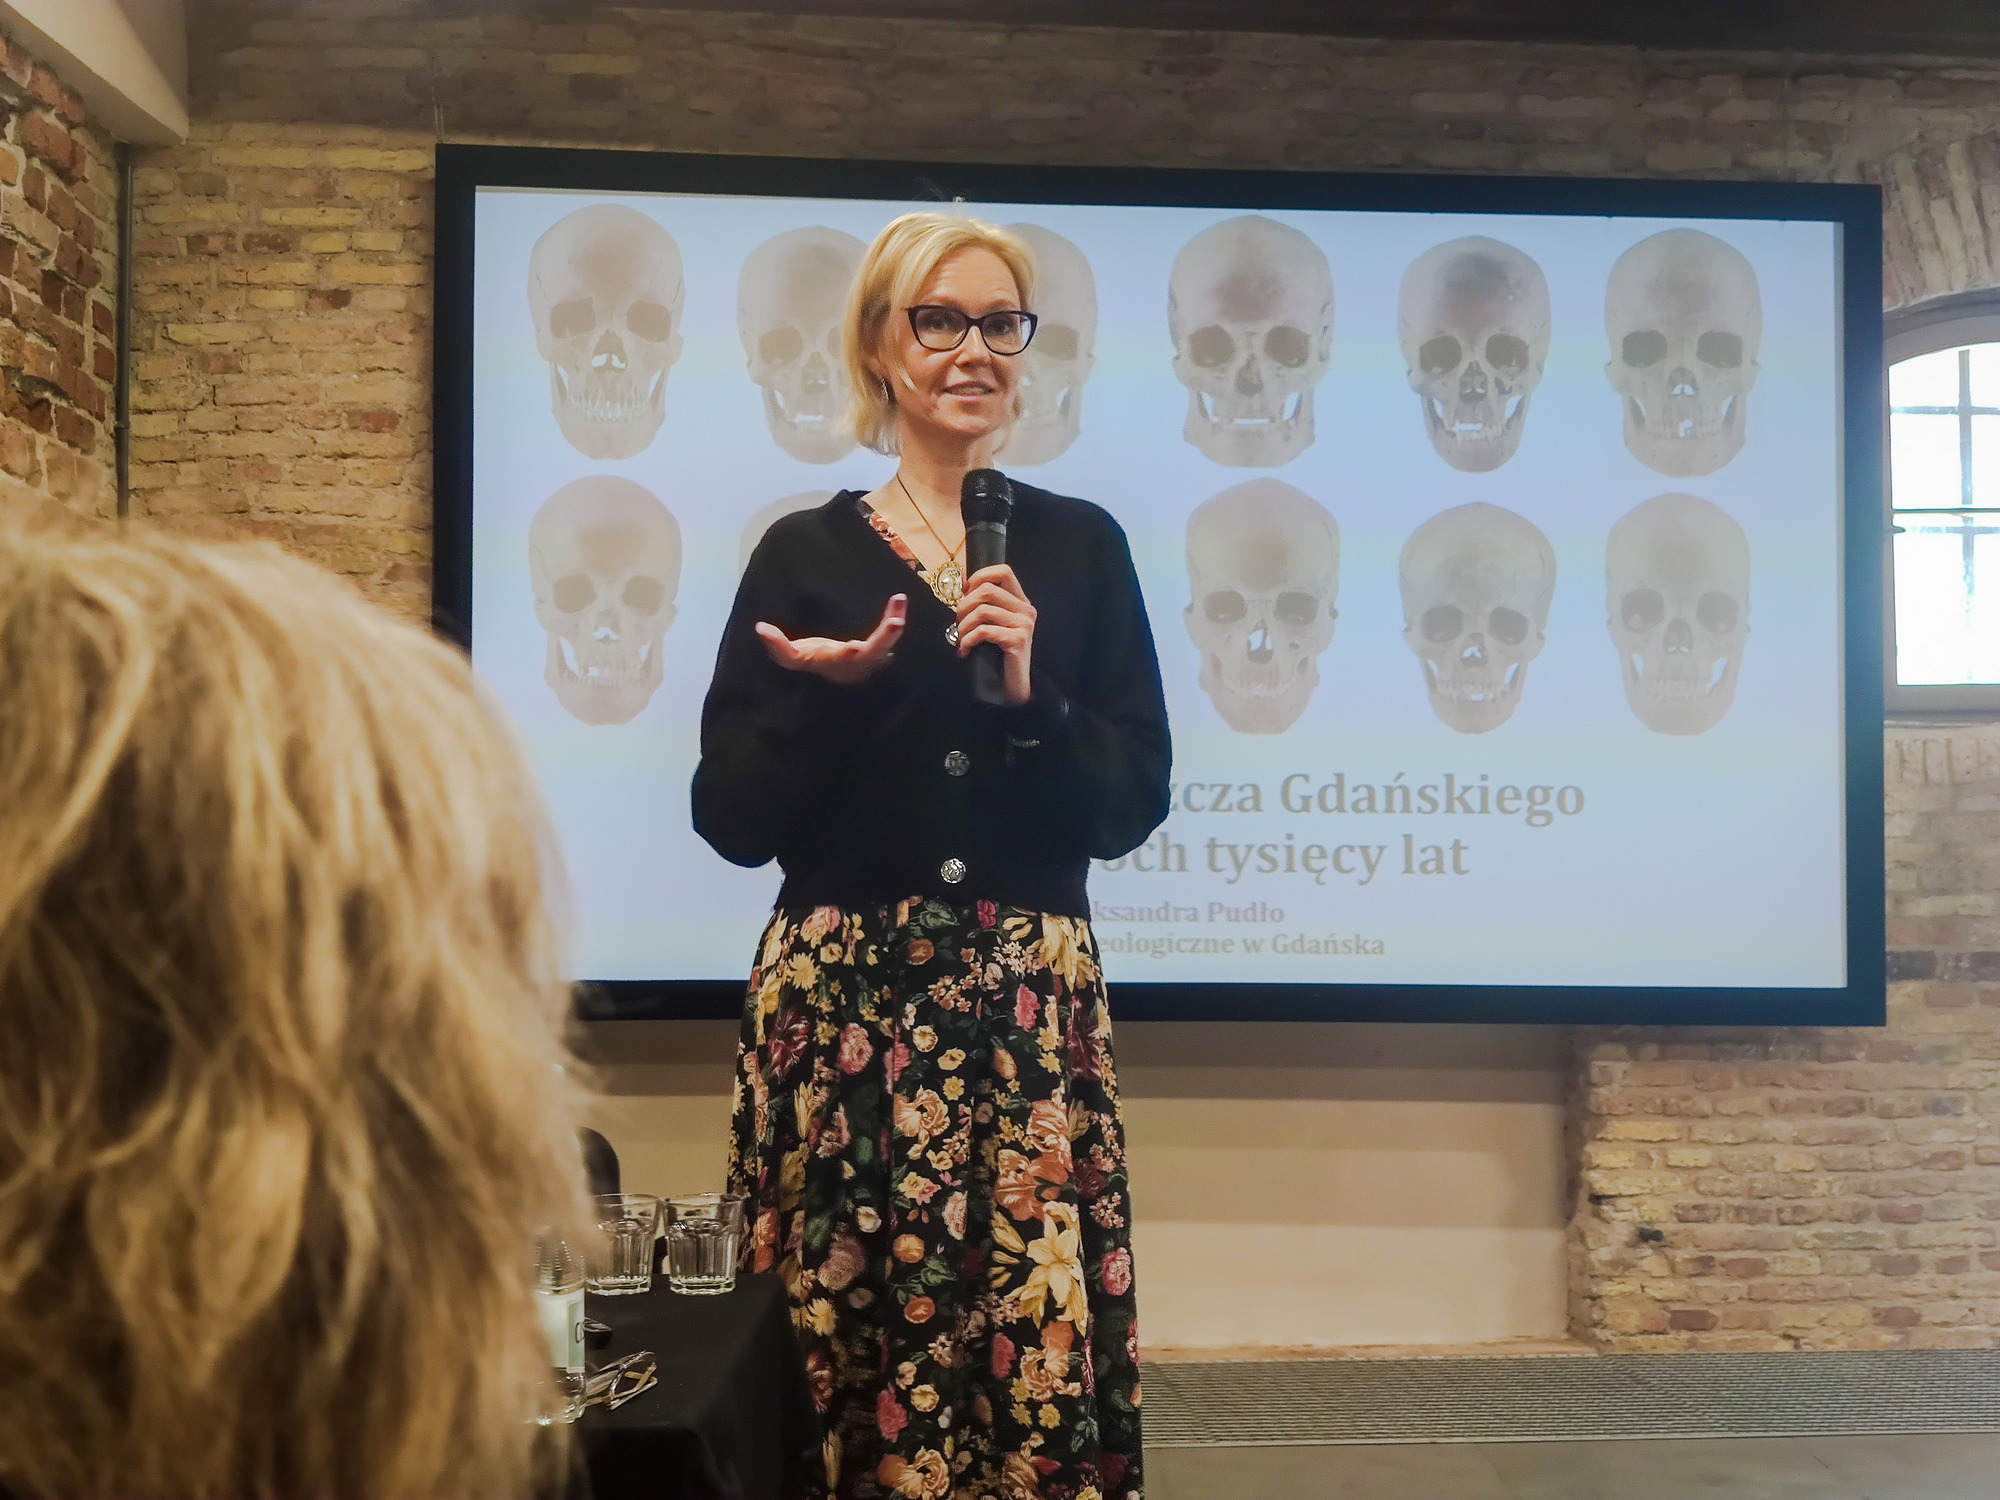 Kobieta w okularach stoi z mikrofonem w dłoni i przemawia. W tle widać ekran, na którym wyświetlone są zdjęcia ludzkich czaszek.